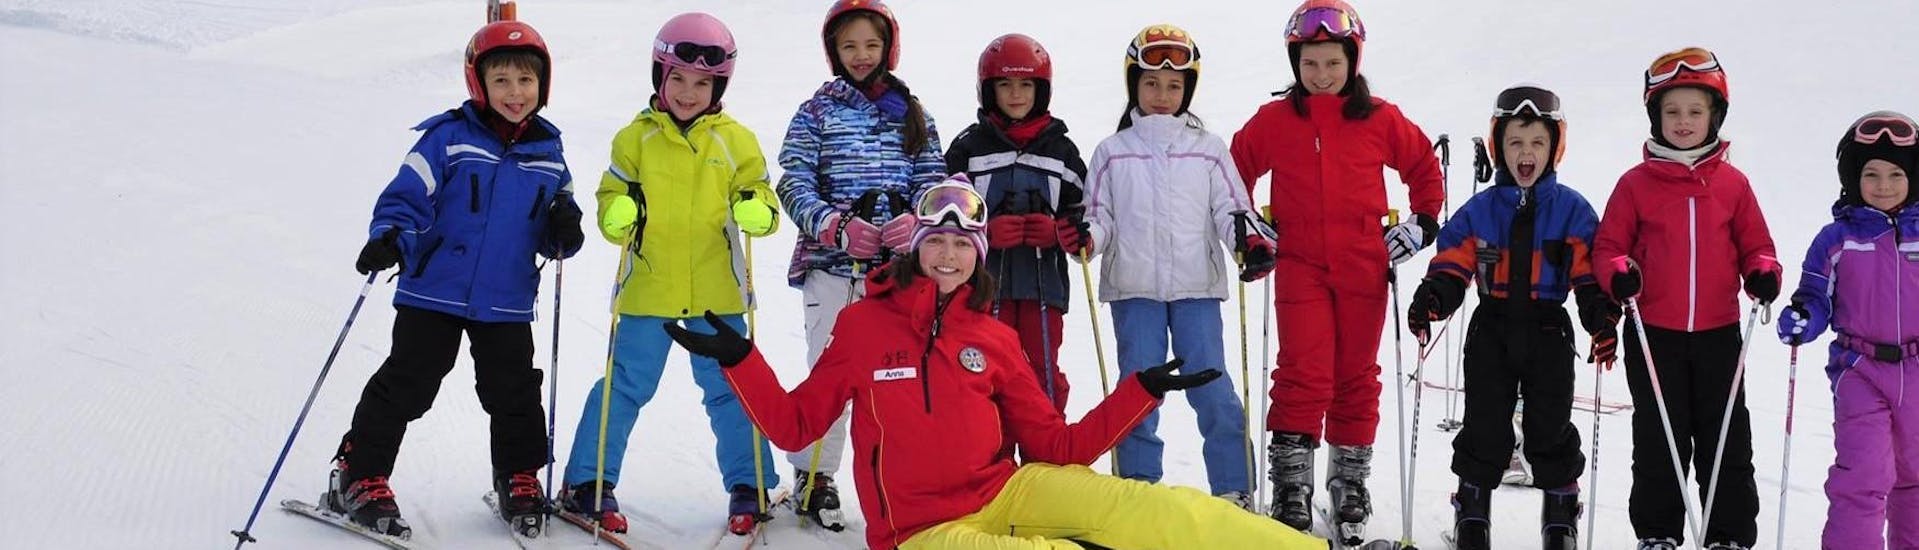 Lezioni di sci per bambini (4-12 anni) - Festività.